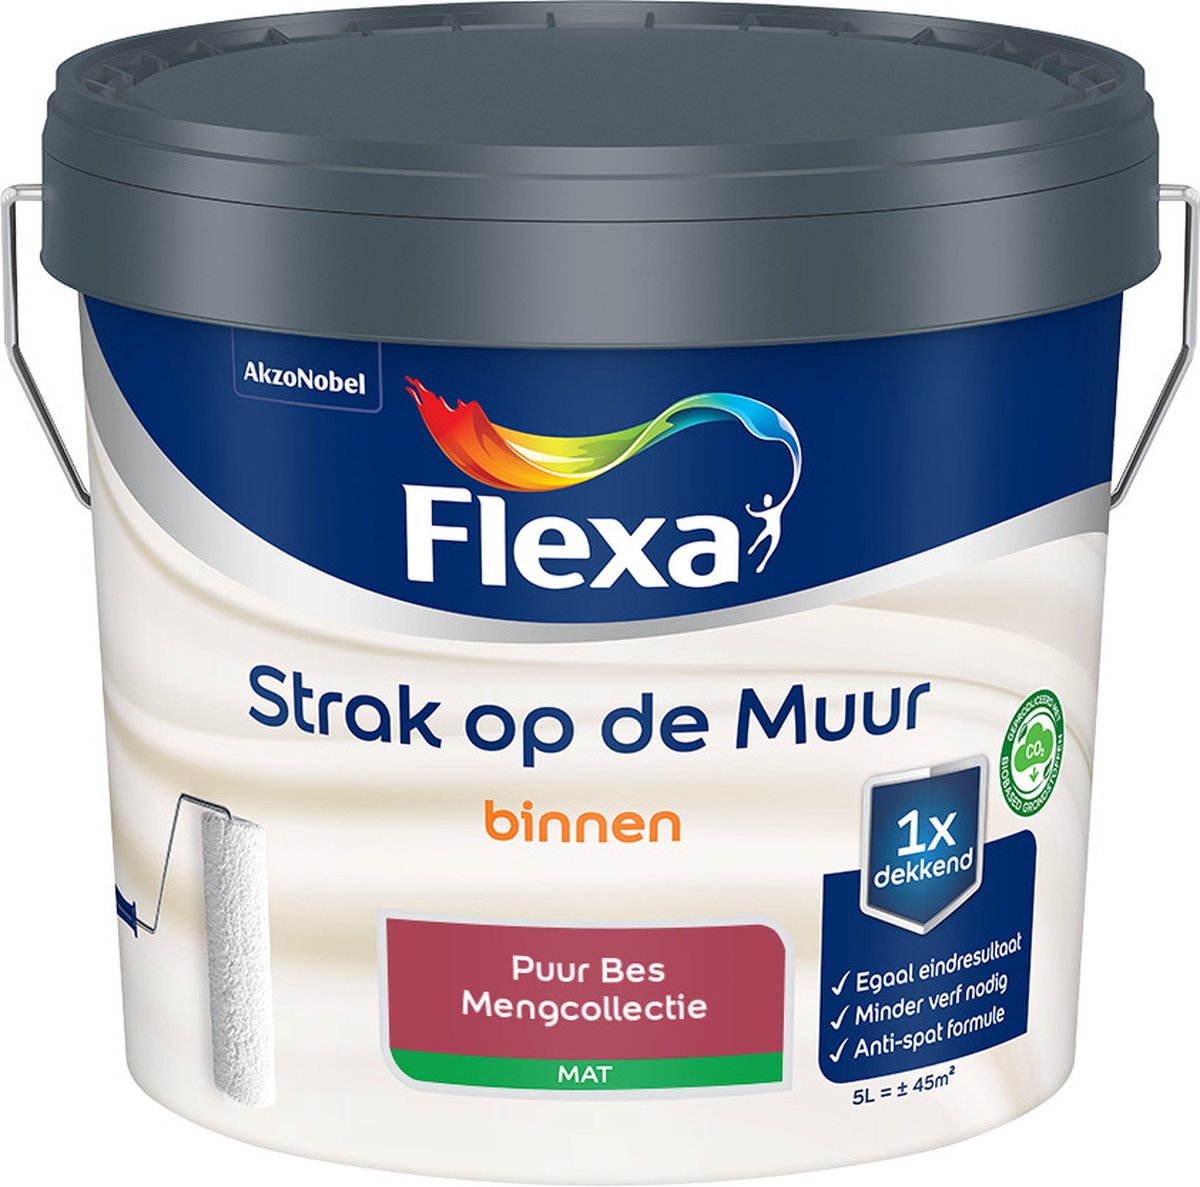 Flexa Strak op de muur - Muurverf - Mengcollectie - Puur Bes - 5 Liter